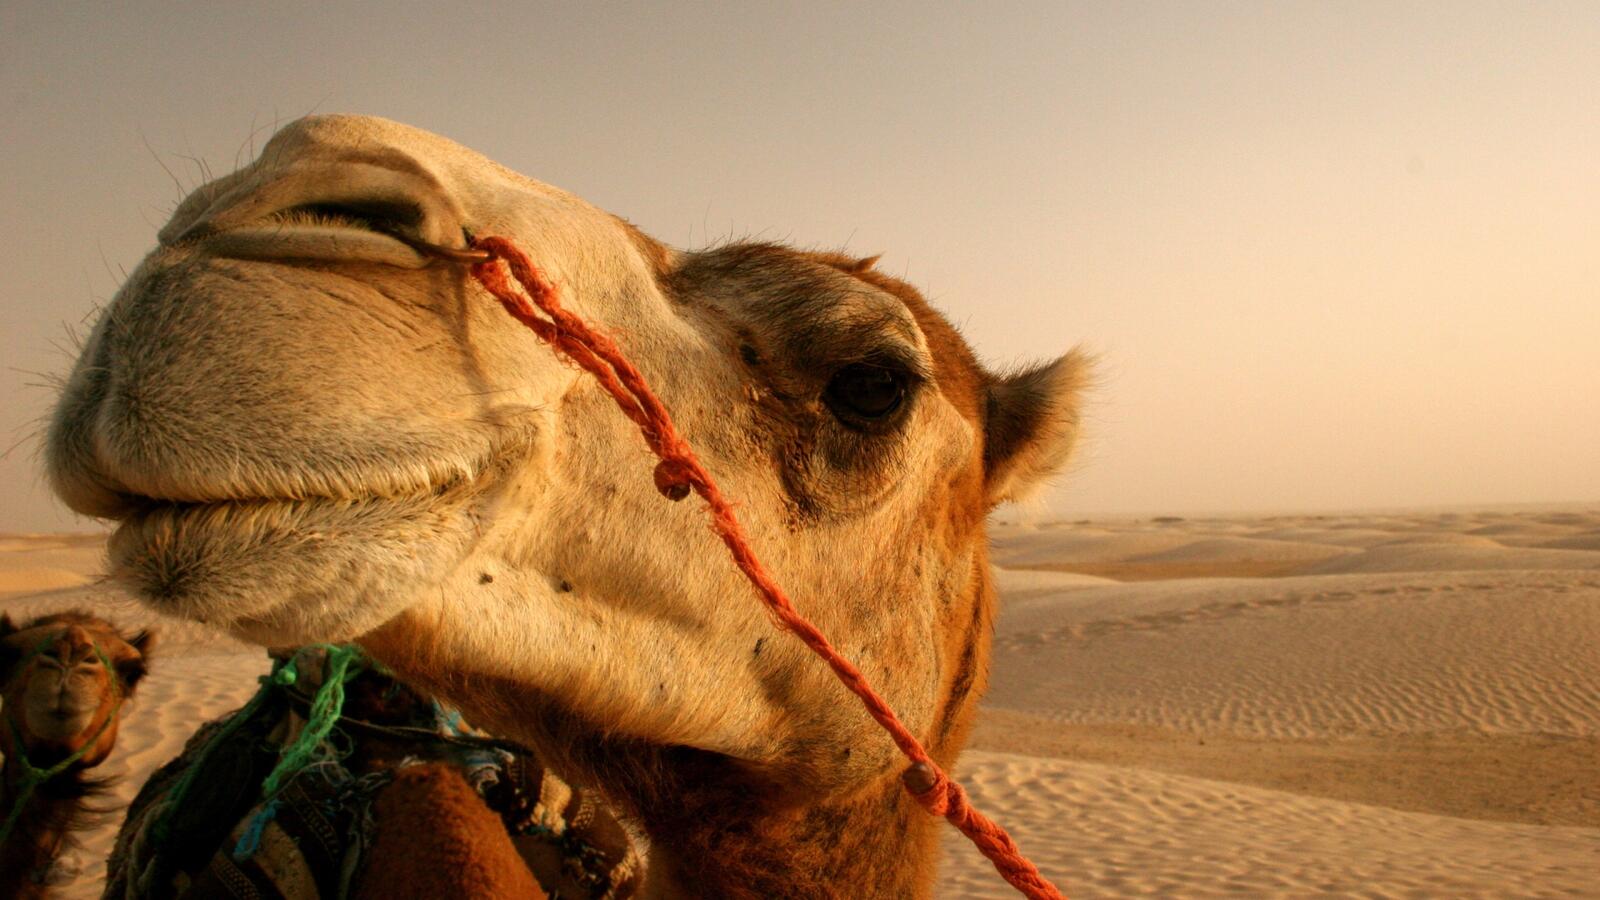 Wallpapers camel sand desert on the desktop